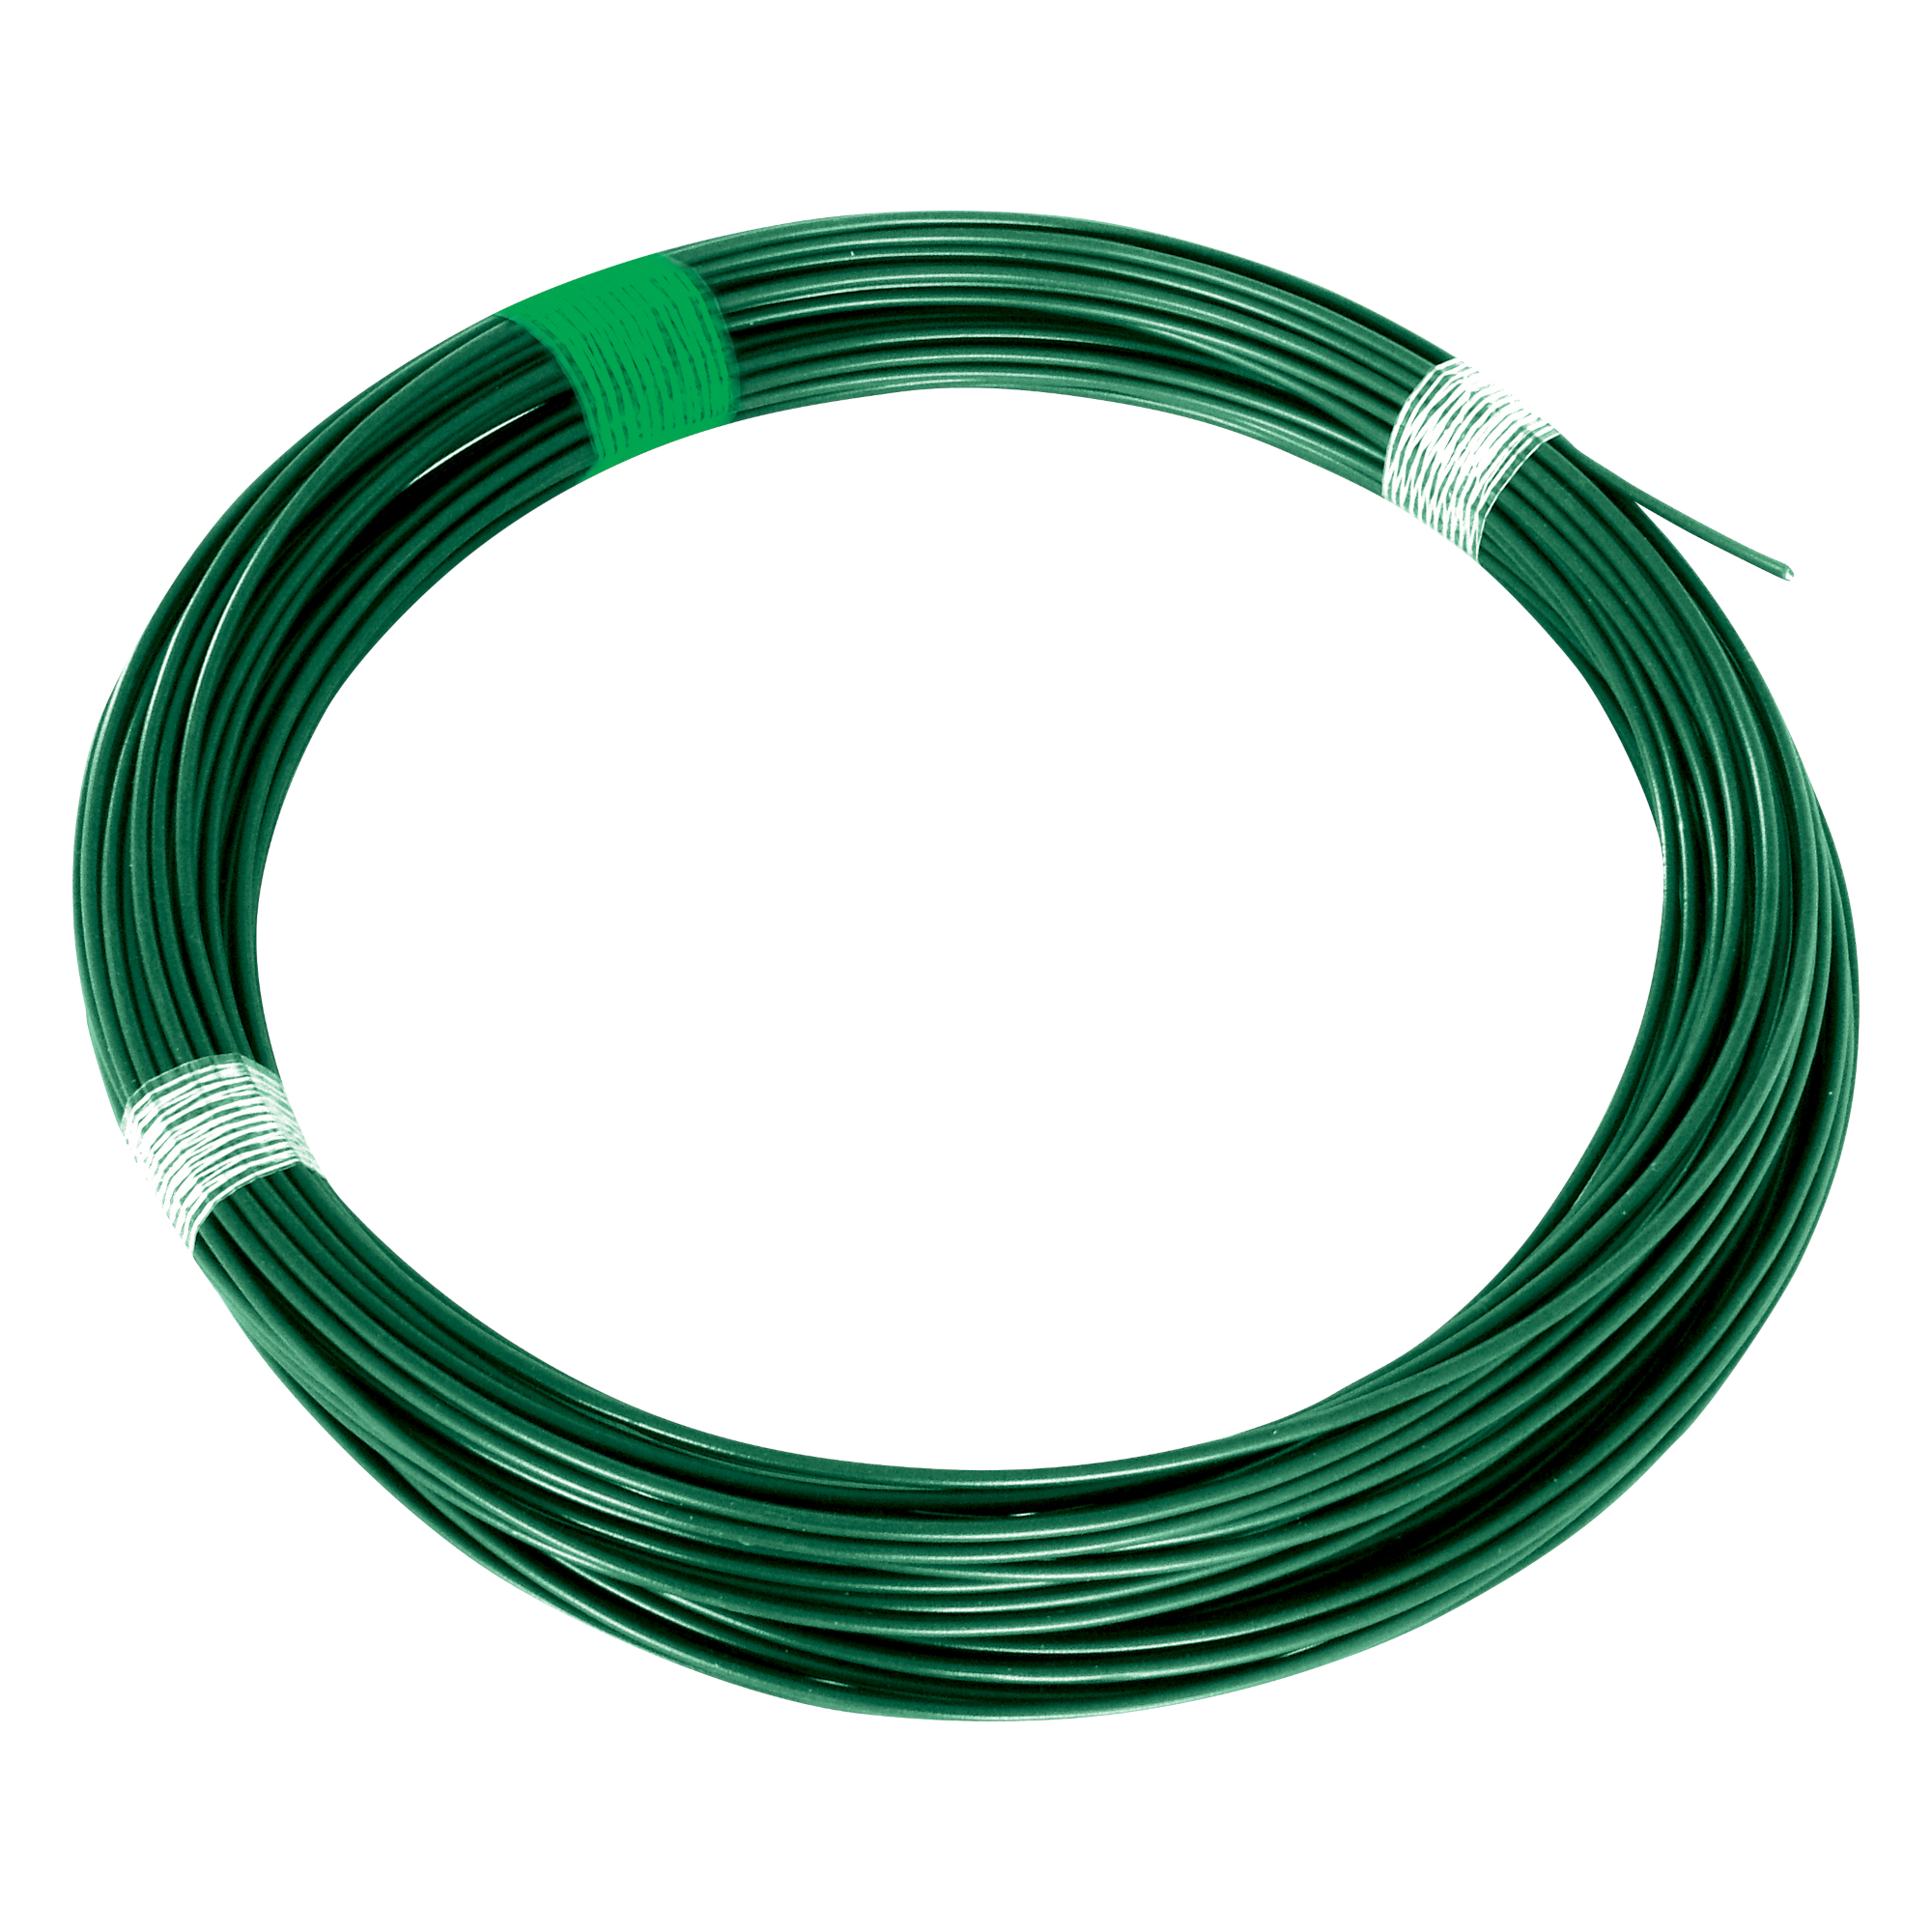 Drát napínací Ideal Zn + PVC zelený průměr drátu 3,40 mm 26 m/bal.